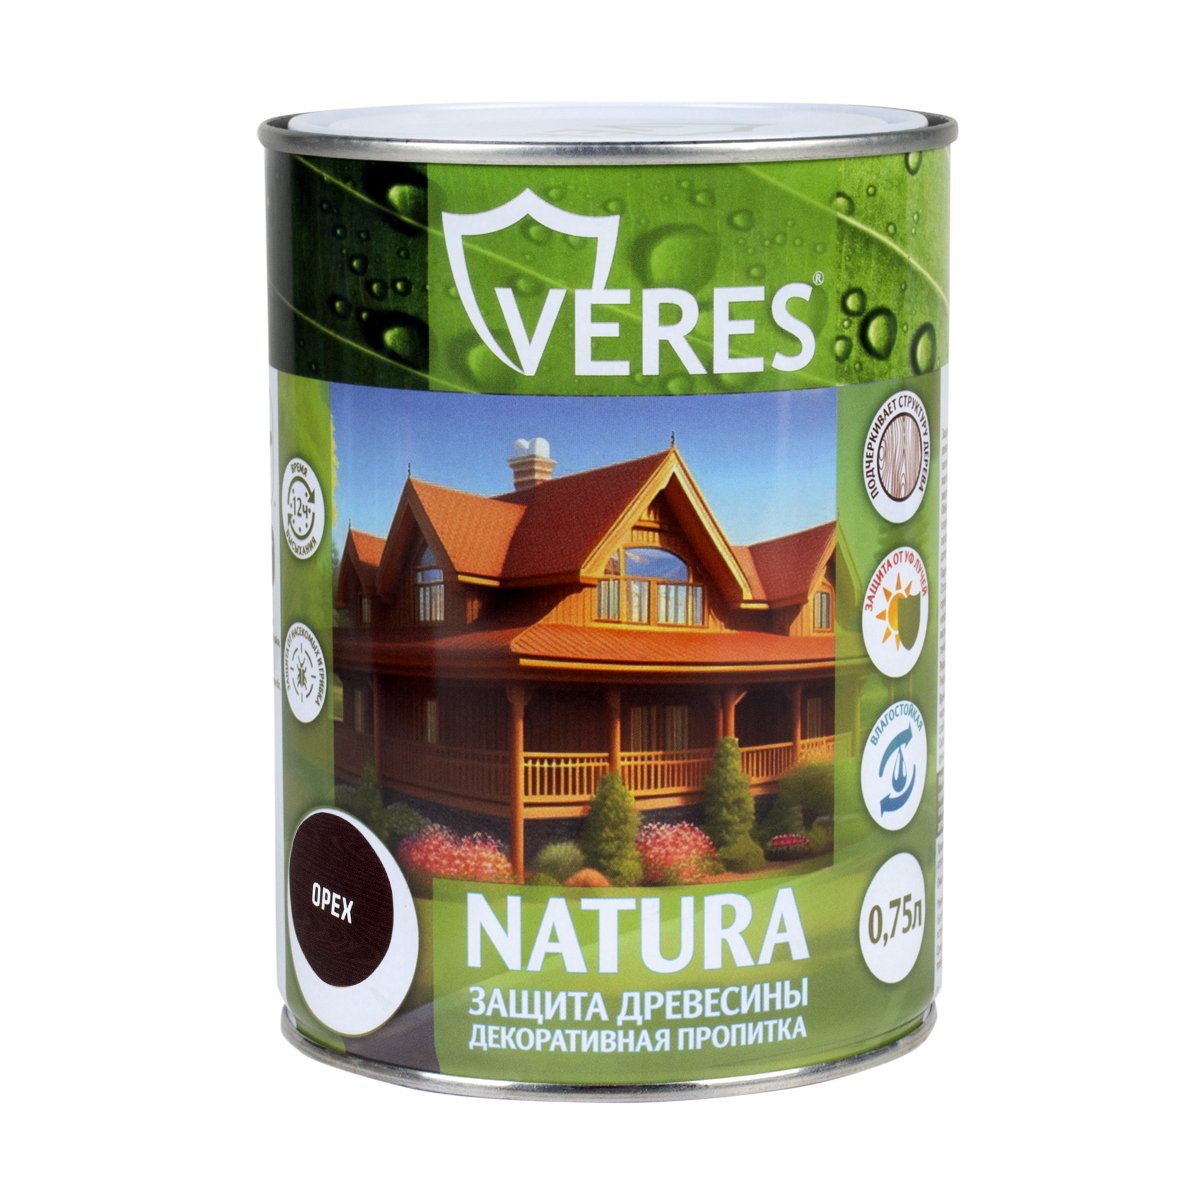 Декоративная пропитка для дерева Veres Natura полуматовая 0 75 л орех, VR-116 пропитка veres